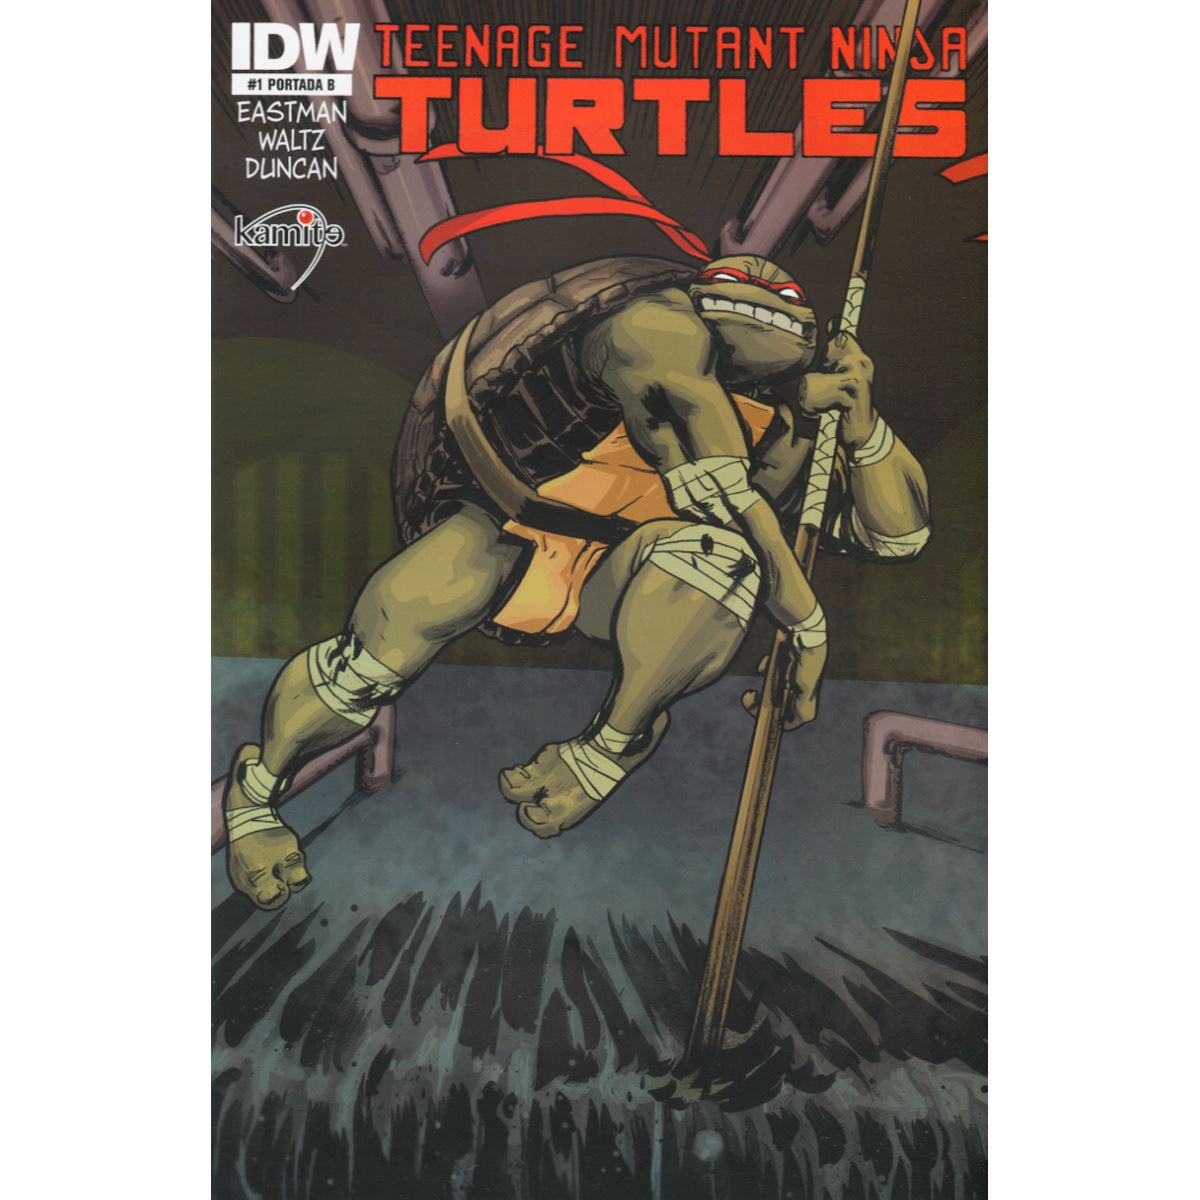 Cómic The Teenage Mutant Ninja Turtles # 1-B